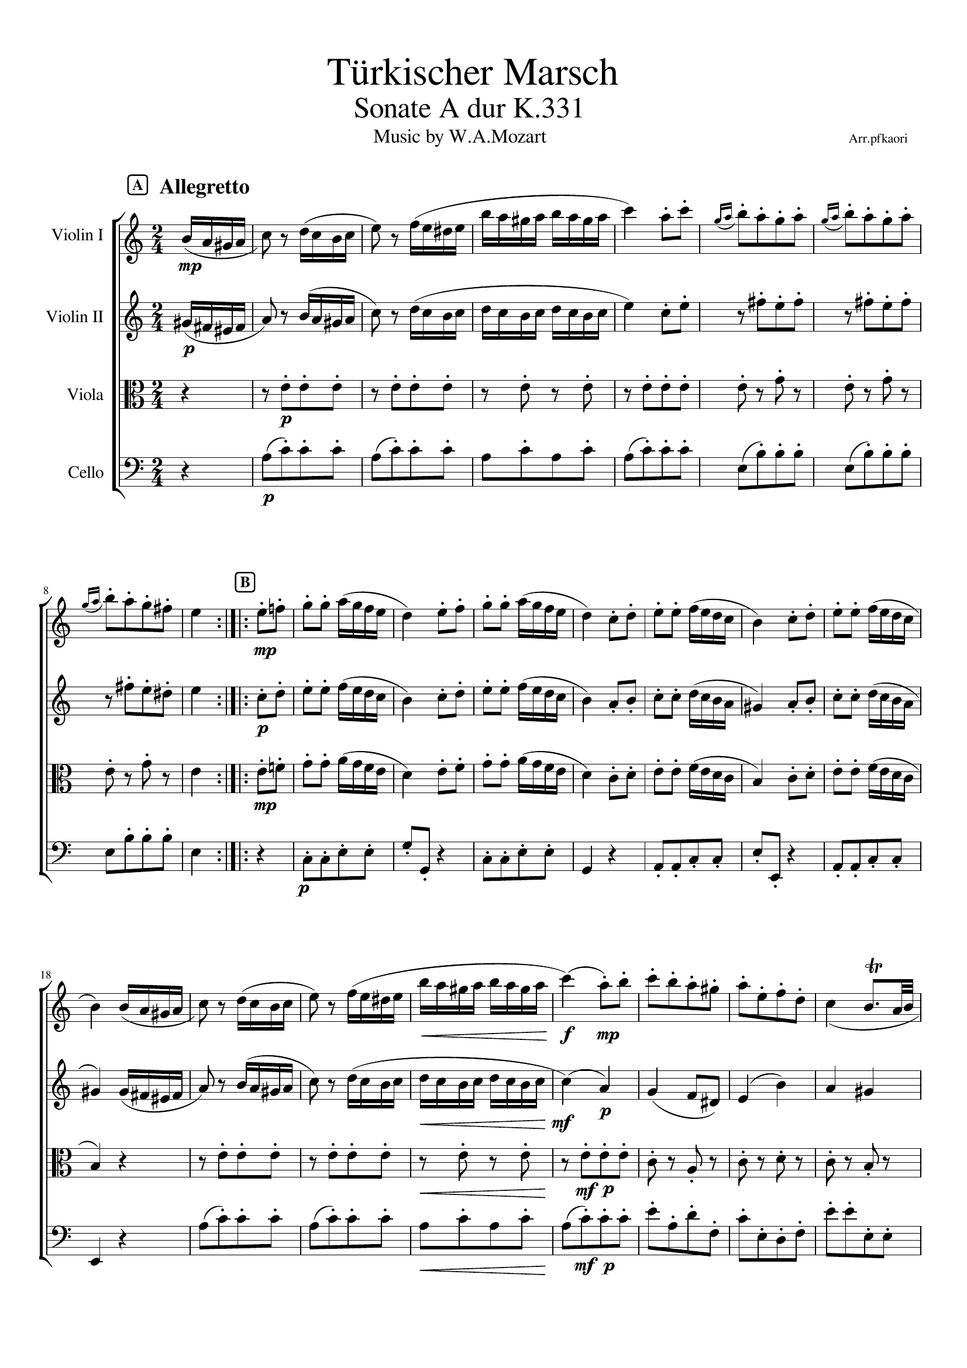 Mozart - Turkish March K.331 (Strings Quartetto /unaccompanied) by pfkaori